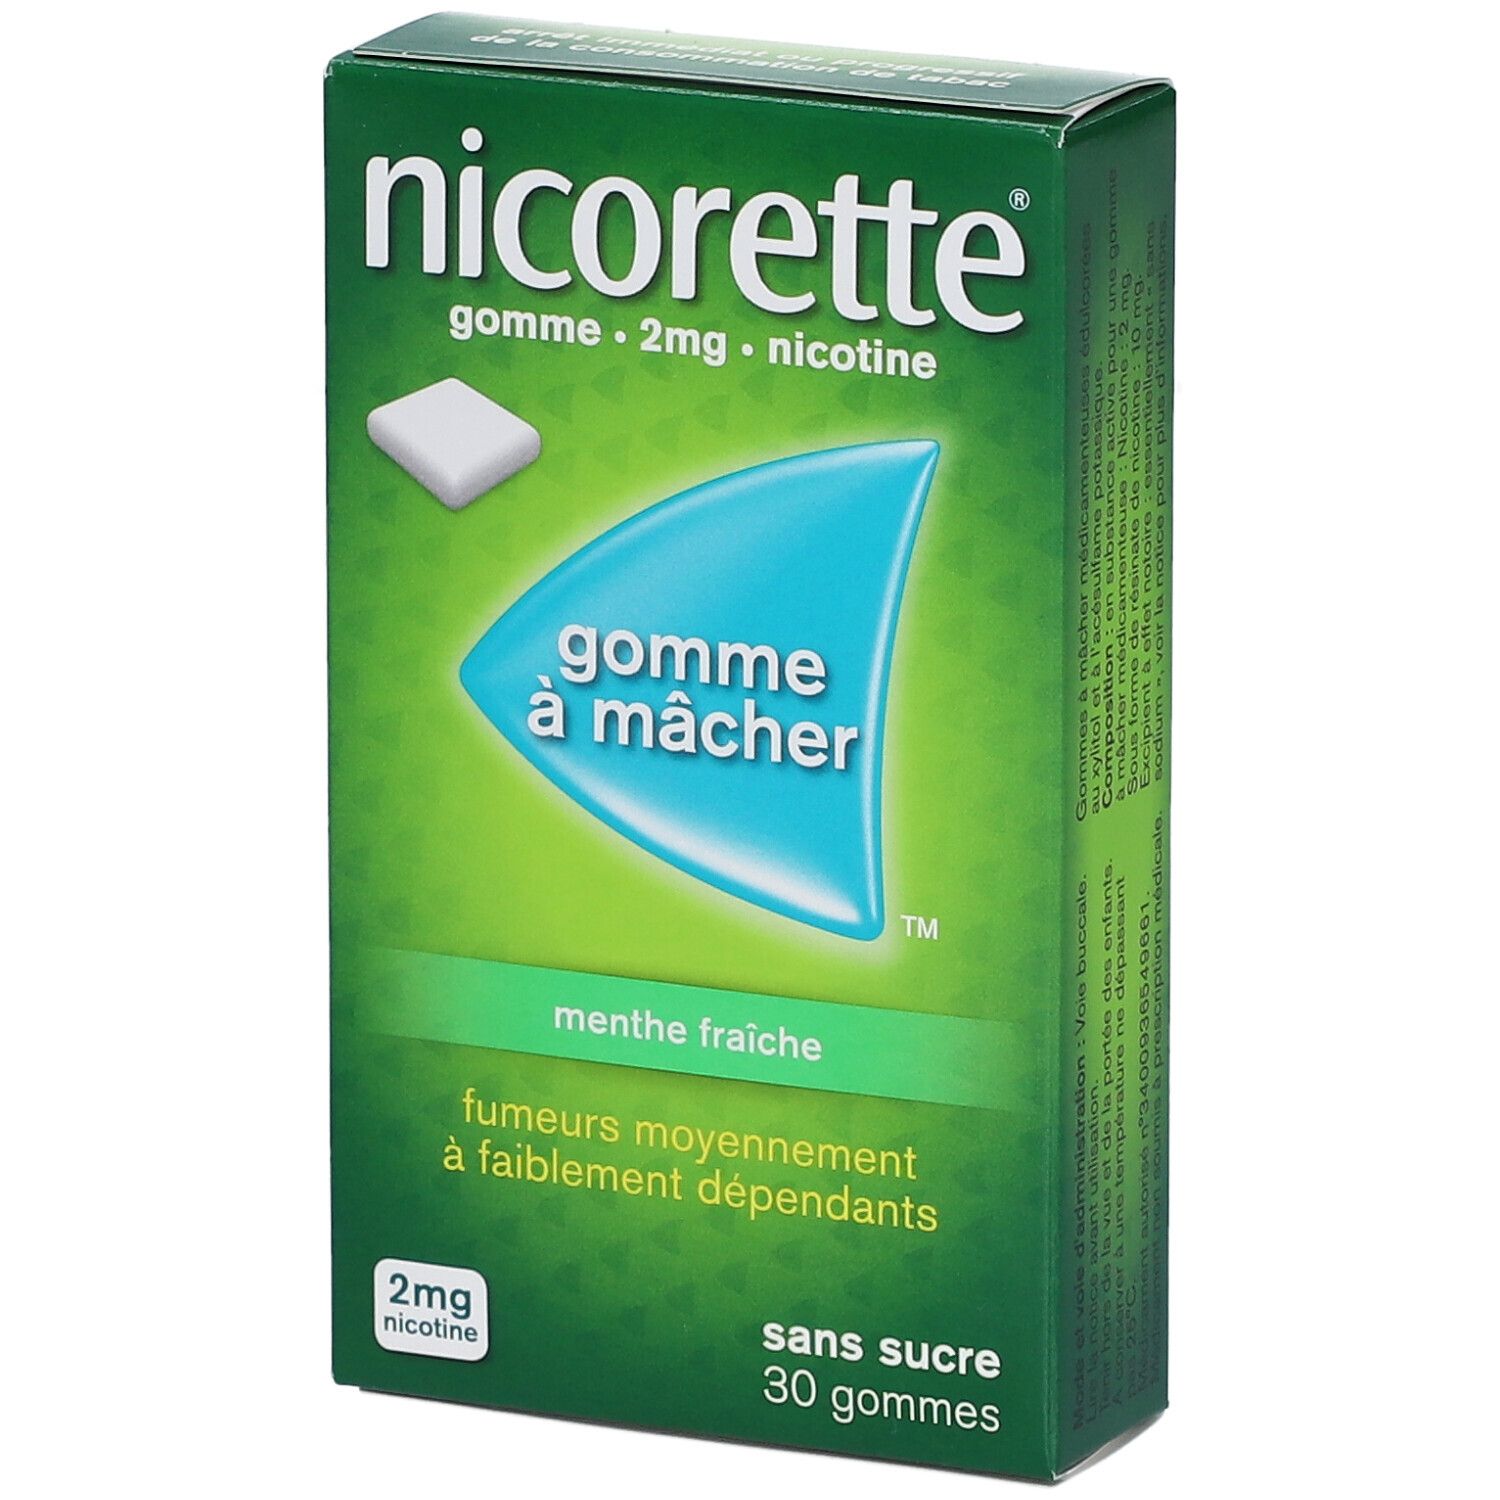 Nicorette® menthe fraiche s/s